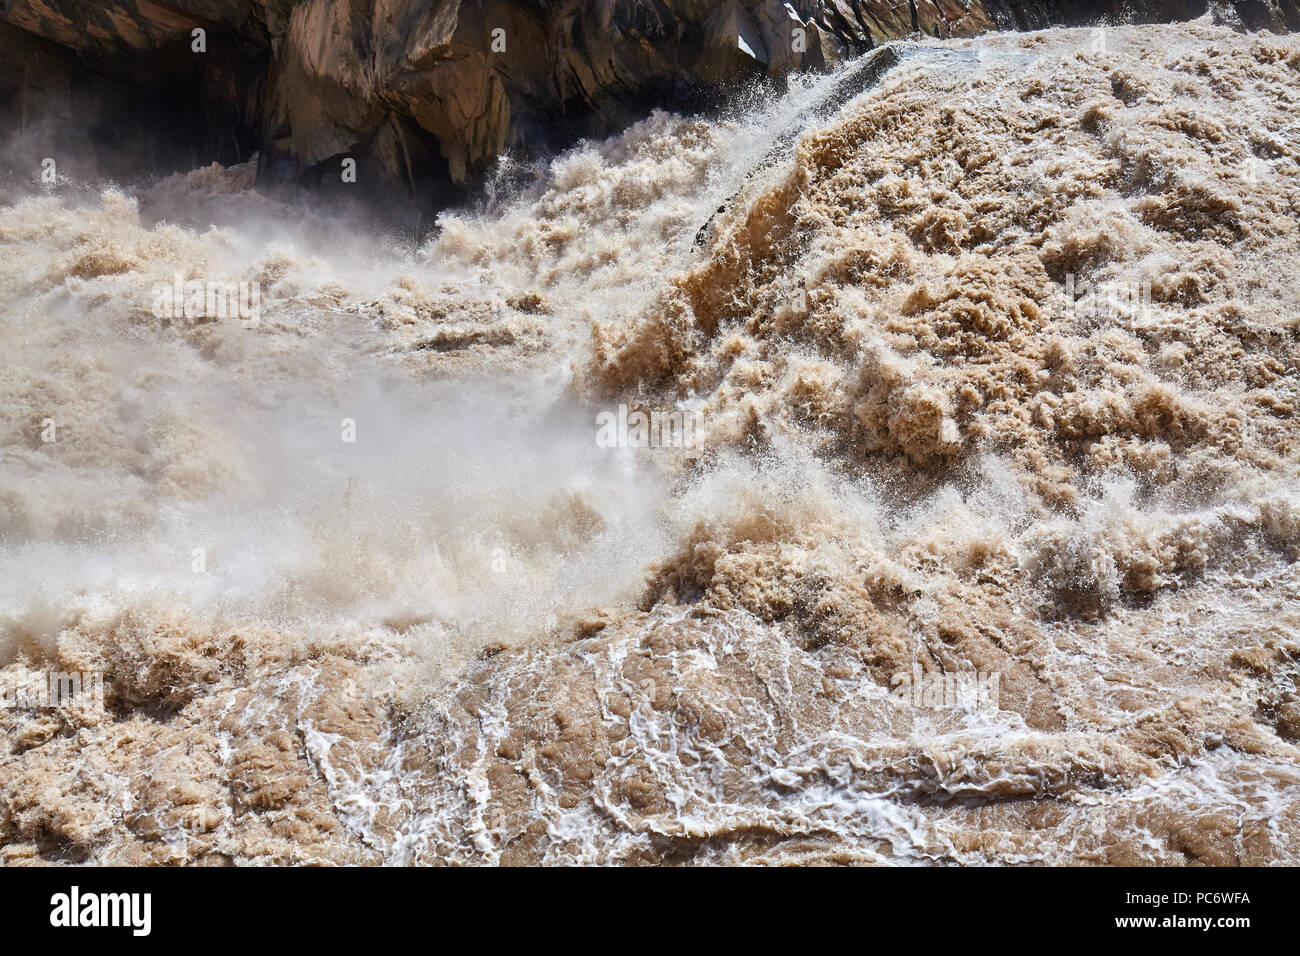 La montagne, la rivière boueuse turbulent la Gorge du tigre bondissant, la Chine. Banque D'Images